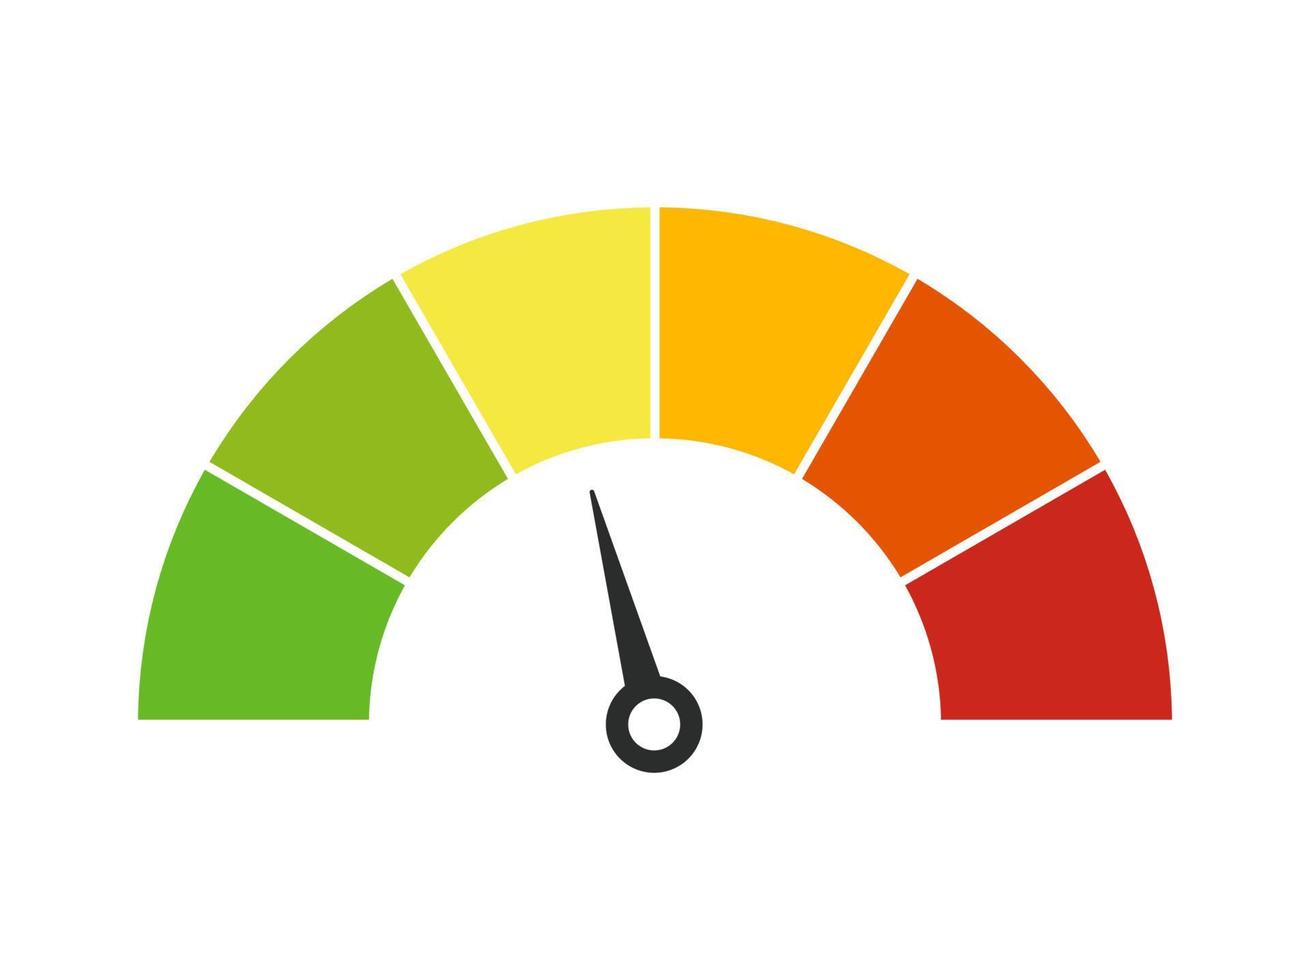 velocímetro vetorial com seta para painel com indicadores verdes, amarelos, laranja e vermelhos. calibre do tacômetro. níveis baixo, médio, alto e de risco. bitcoin índice de medo e ganância criptomoeda vetor